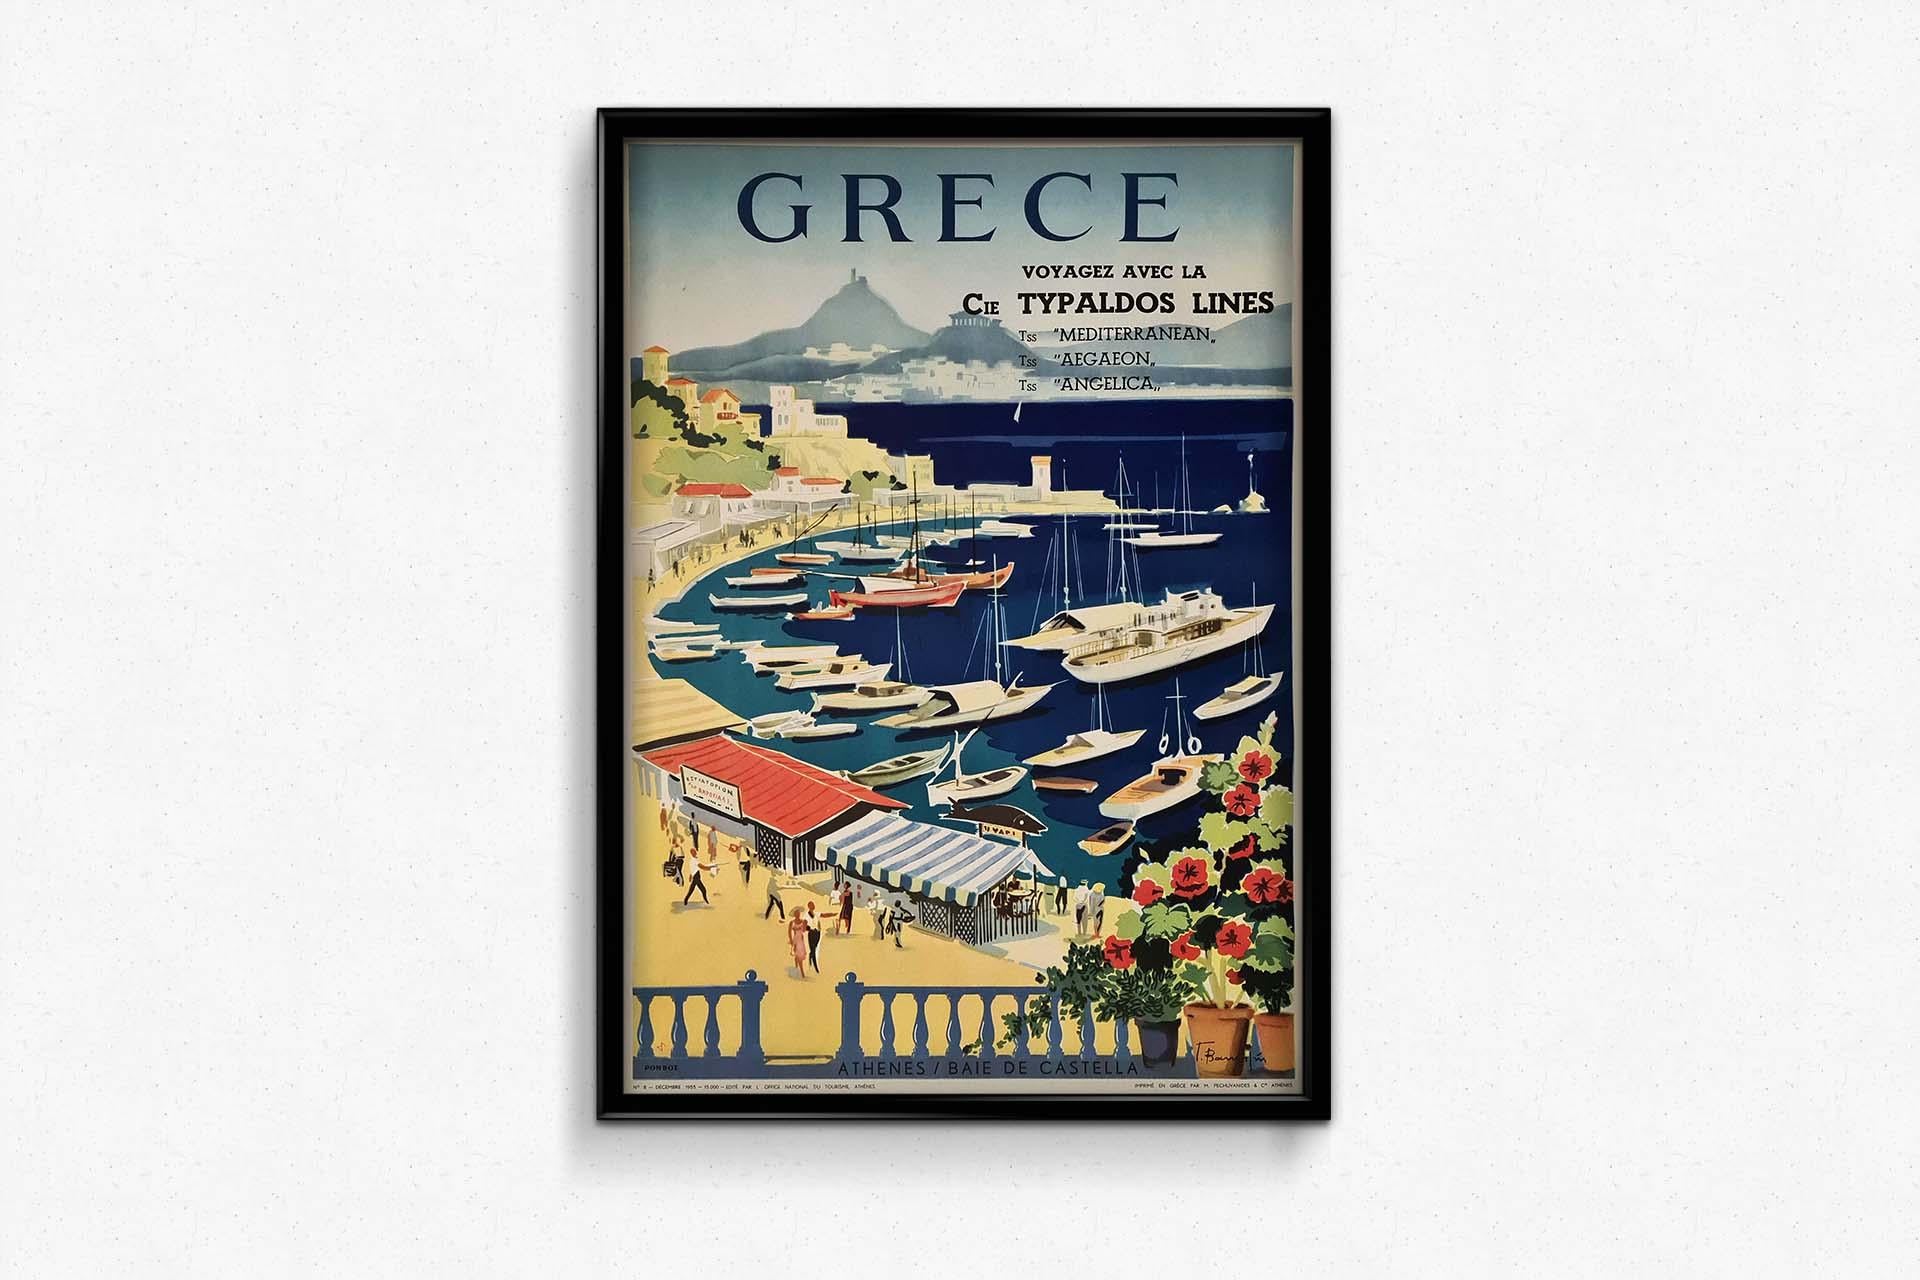 Très belle affiche touristique de Giorgos Vakirtzis (1923-1988) pour la Grèce et plus précisément Athènes et la baie du Castella au Pirée.
Situé sur une colline surplombant le port de Mikrolimano, Kastella est un quartier huppé du Pirée. Le Pirée